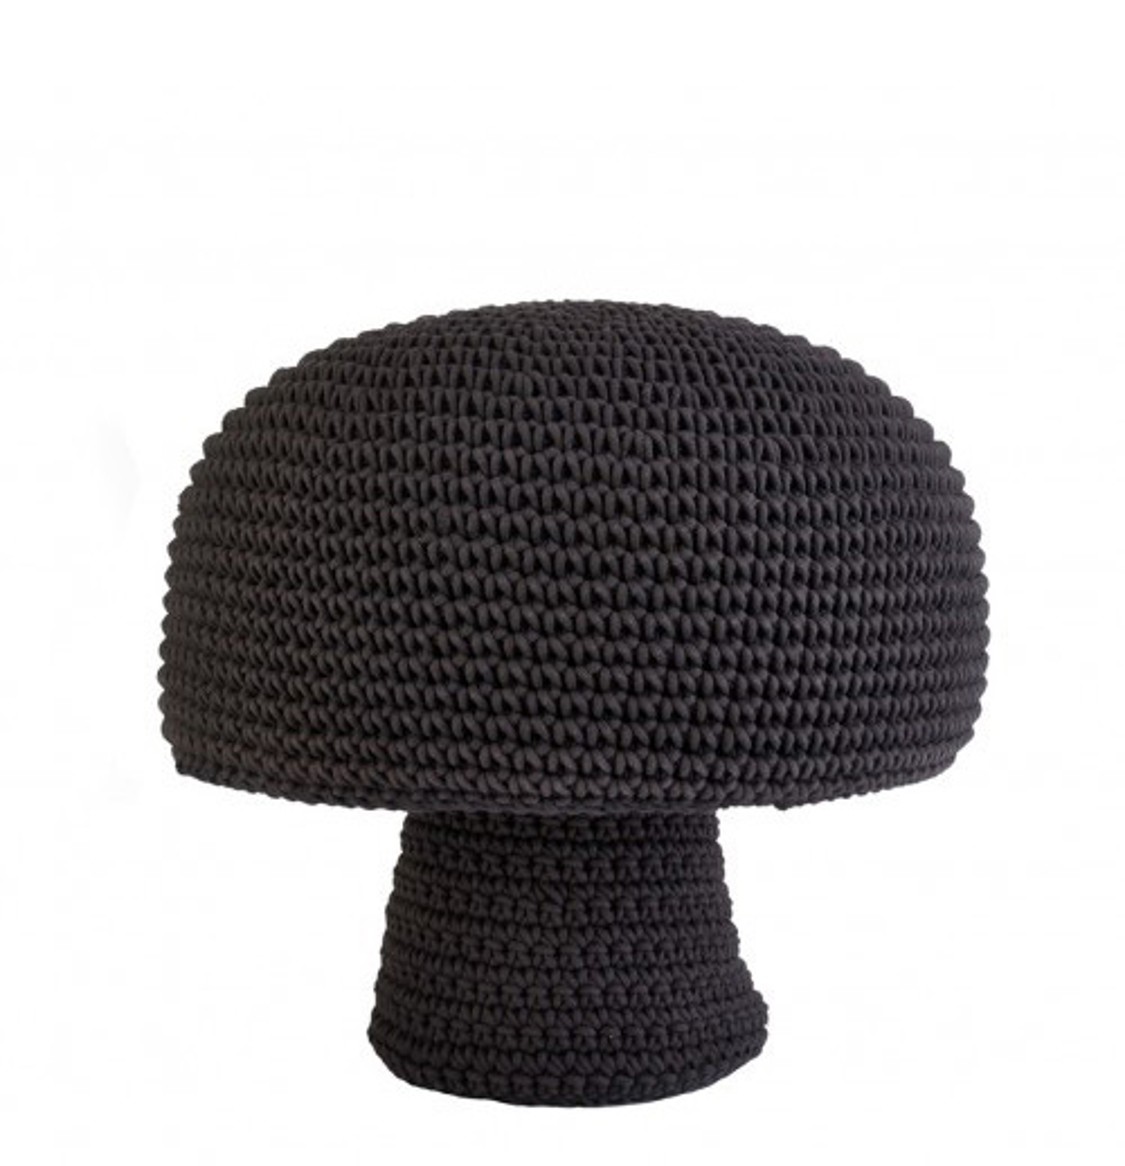 shop Anne Claire Petit  Design: Pouffe Anne Claire Petit, a forma di fungo, in crochet fatto a mano.

Composizione: 100% cotone.
Dimensioni: altezza 38 cm e diametro 40 cm. number 1076